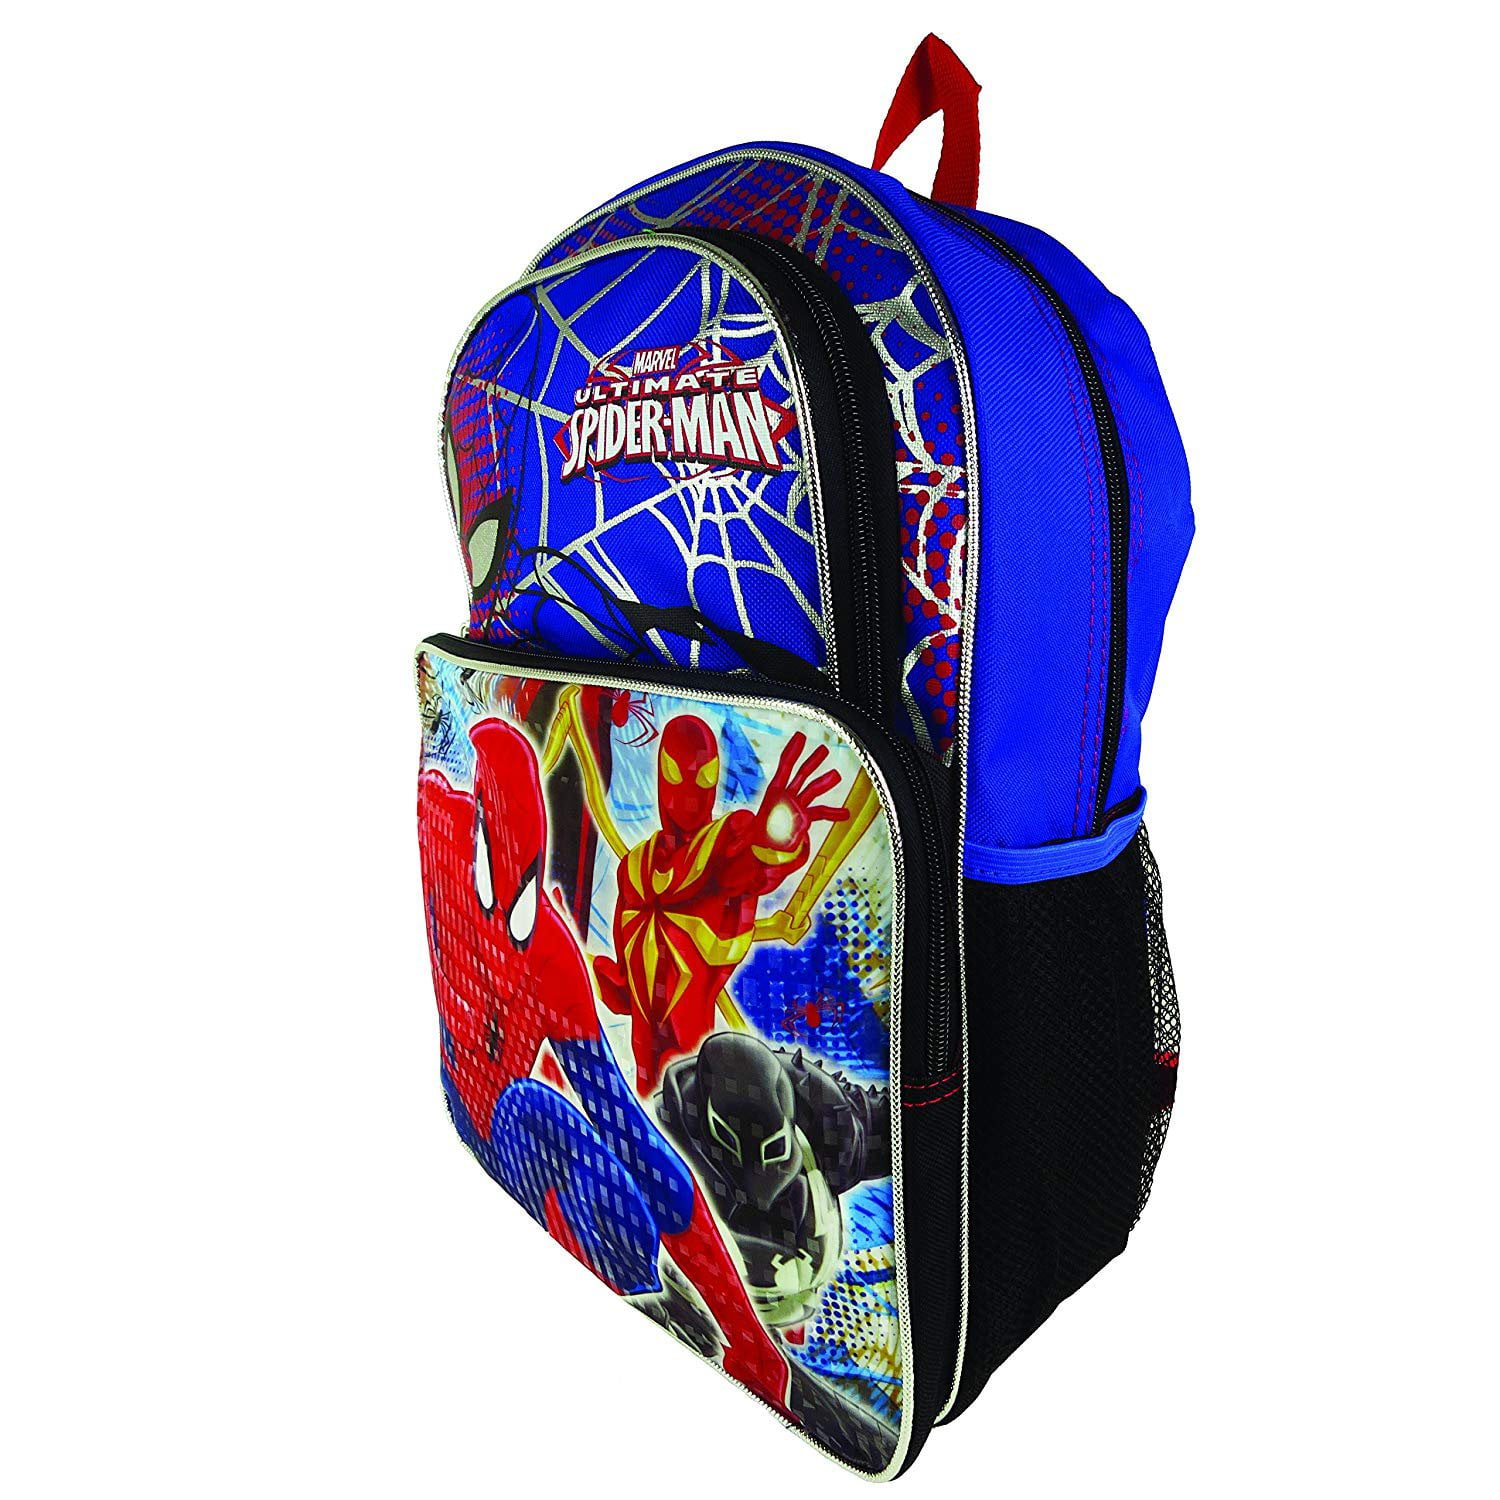 Spiderman Backpack School Bag Travel Gym Sports Boys Marvel Ultimate Black Blue